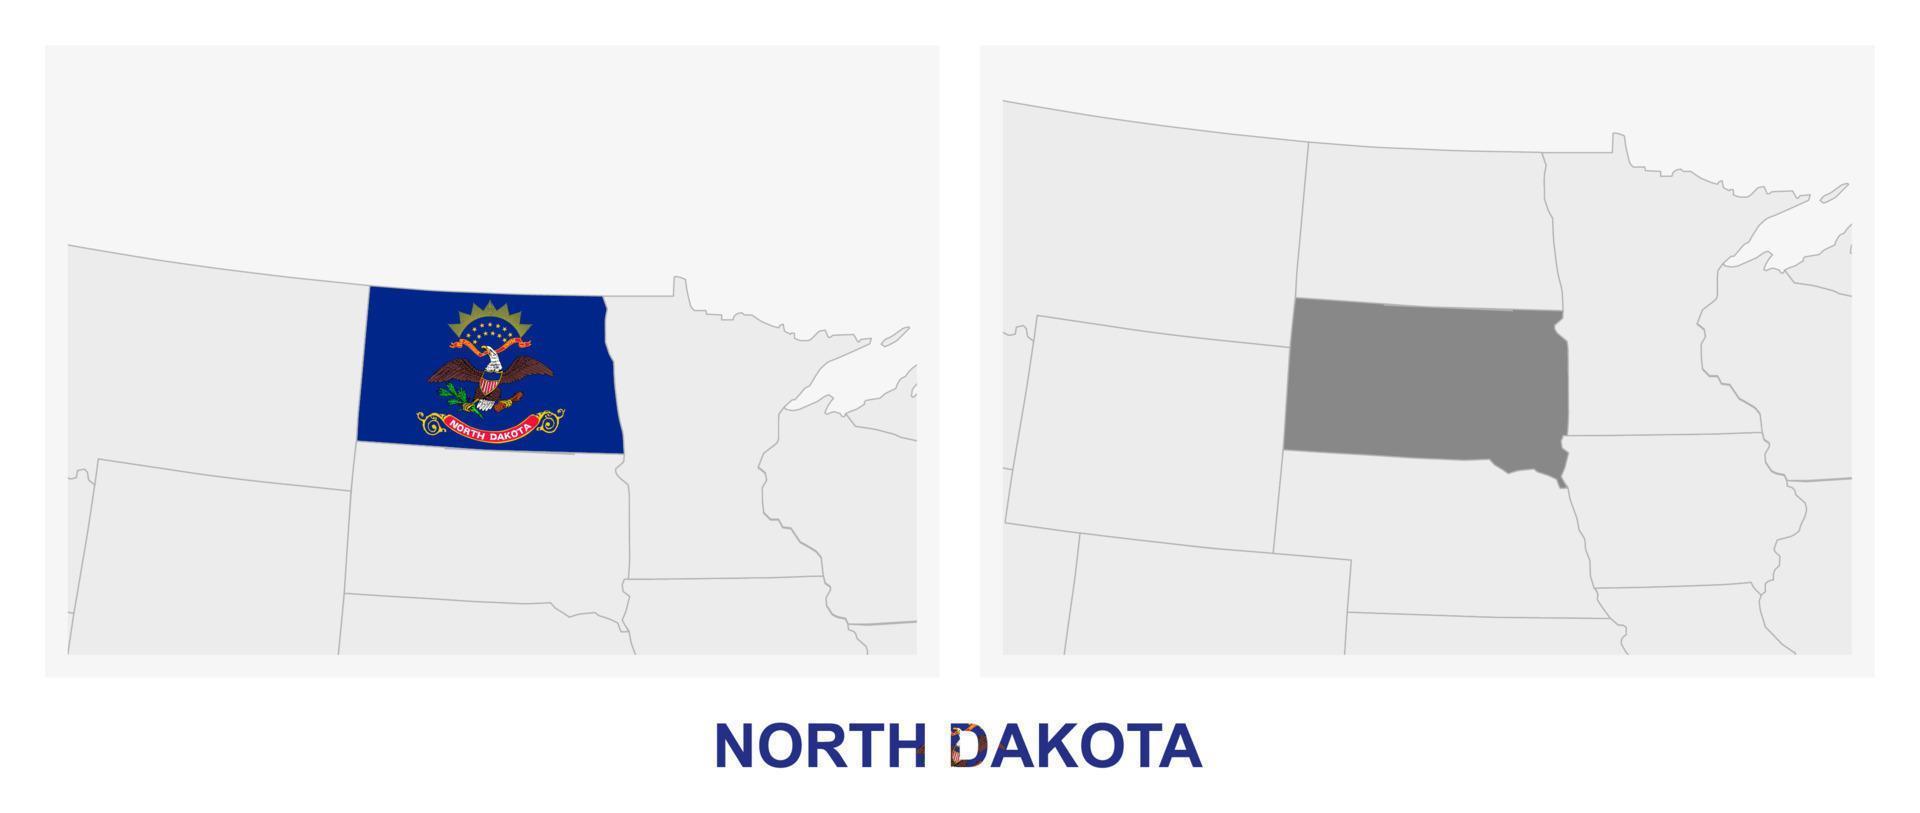 deux versions de la carte de l'état américain du dakota du nord, avec le drapeau du dakota du nord et surlignées en gris foncé. vecteur